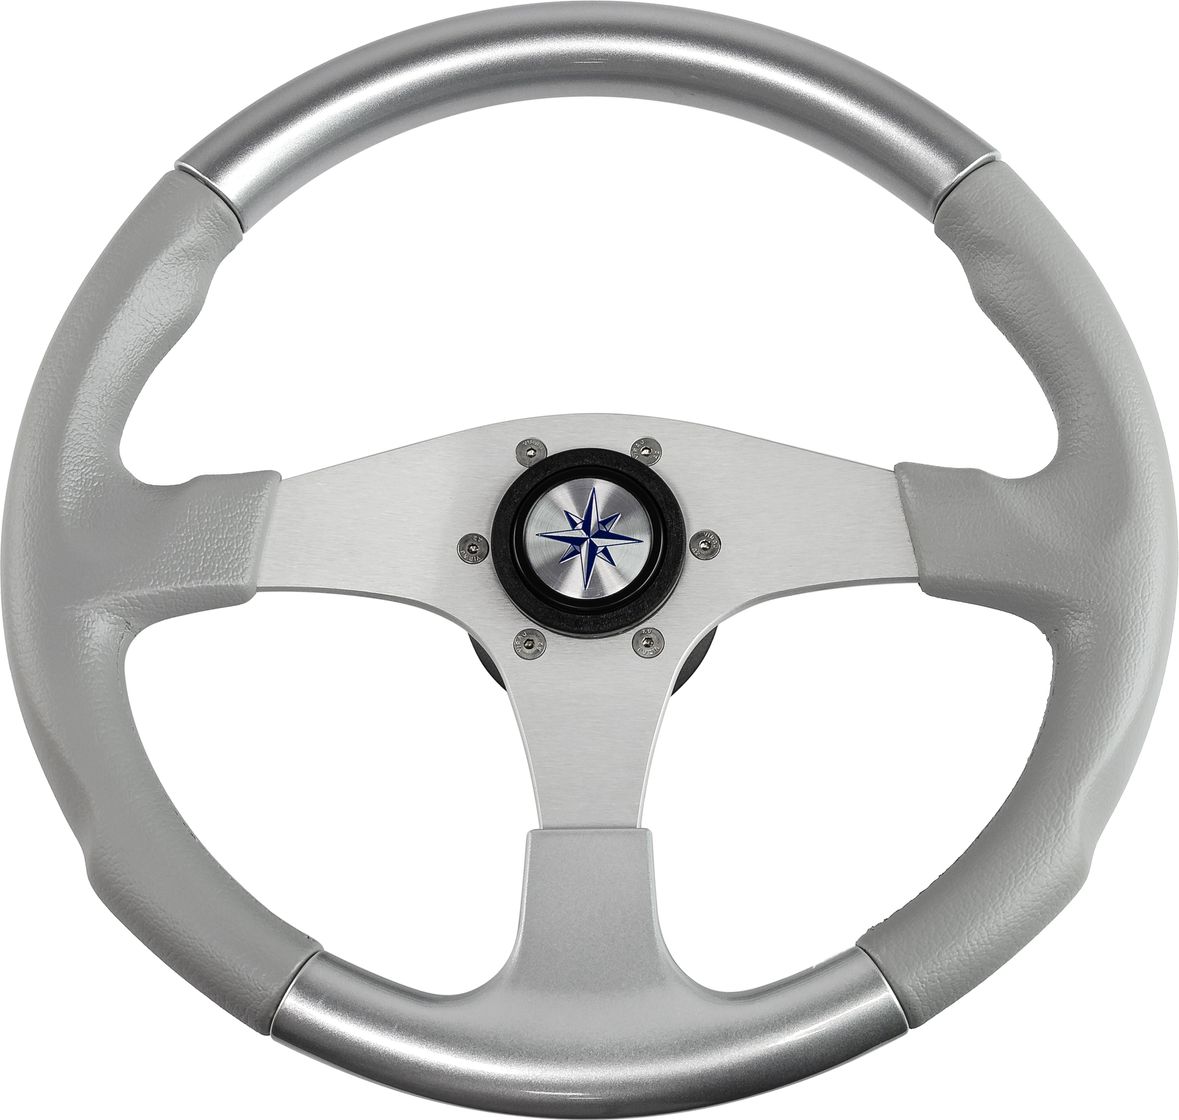 Рулевое колесо EVO MARINE 2 обод серосеребряный, спицы серебряные д. 355 мм VN850003-93 рулевое колесо delfino обод серый спицы серебряные д 310 мм vn70103 03